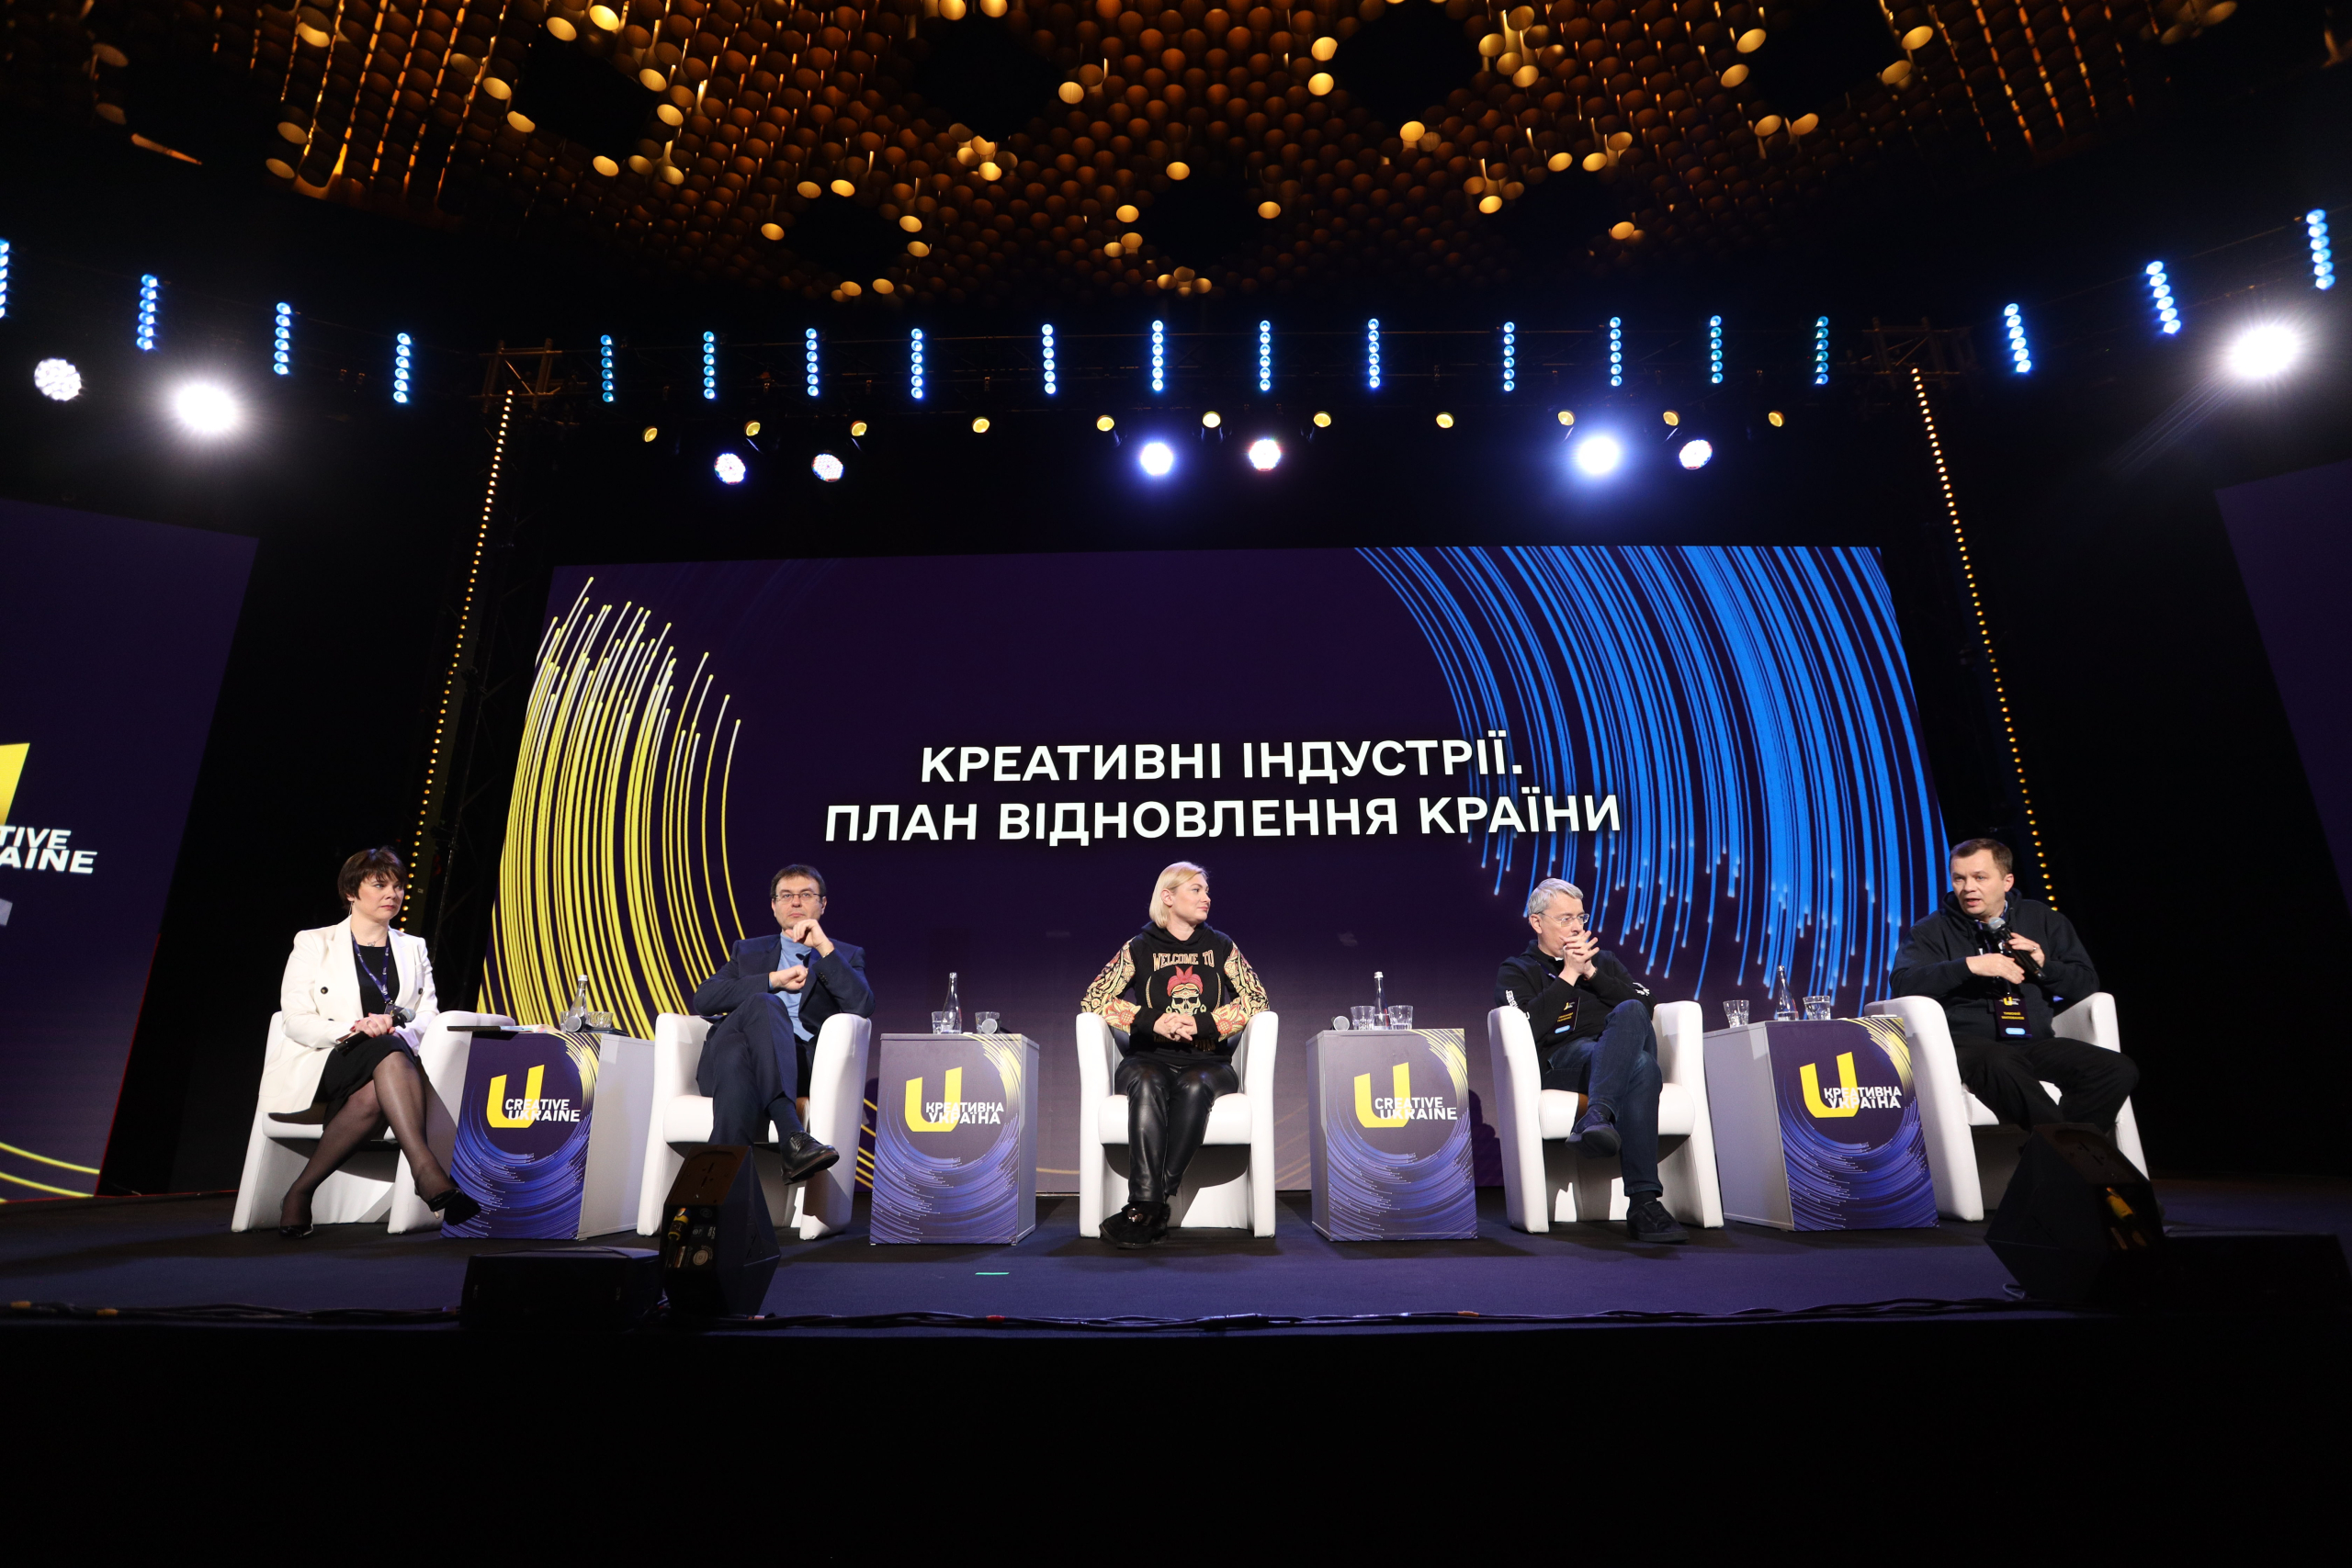 VI Міжнародний форум «Креативна Україна» в Києві